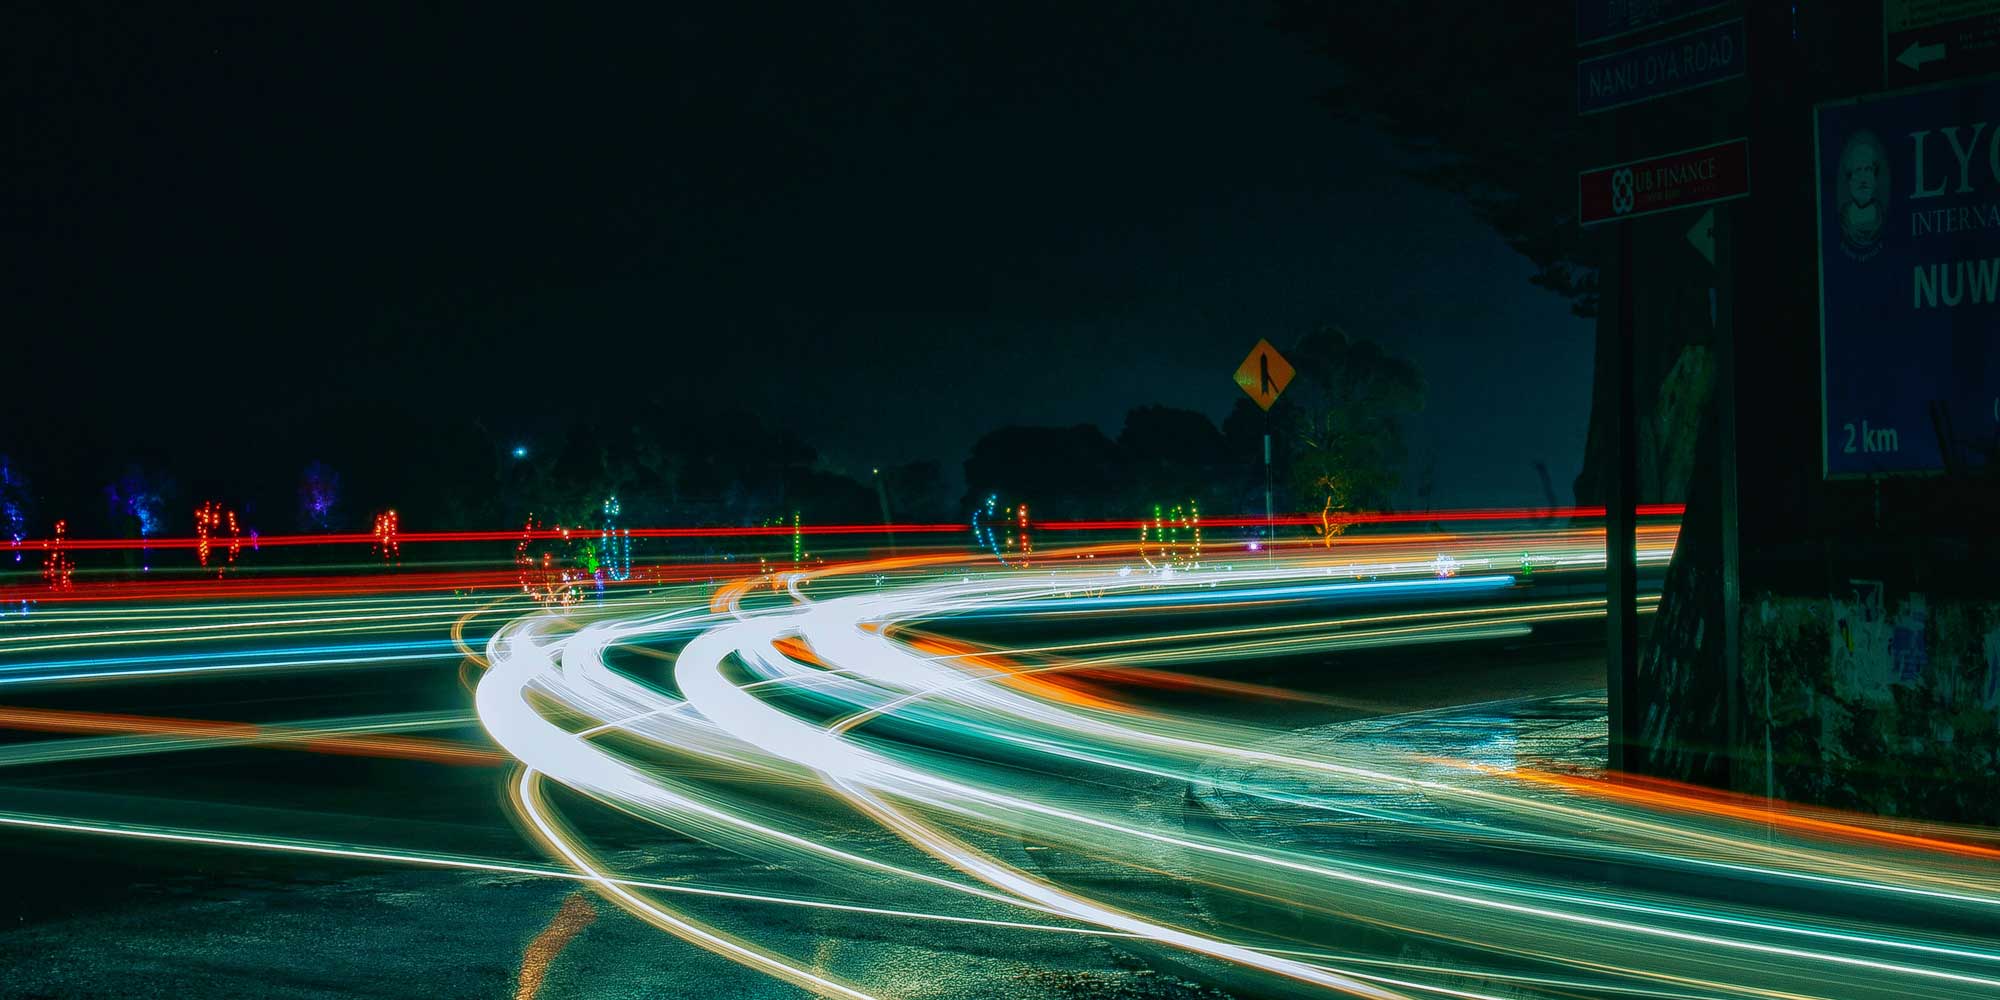 Nachtaufnahme einer Straßenkreuzung auf der nur die Lichter der vorbeifahrenden Autos als Lininen zu erkennen sind.